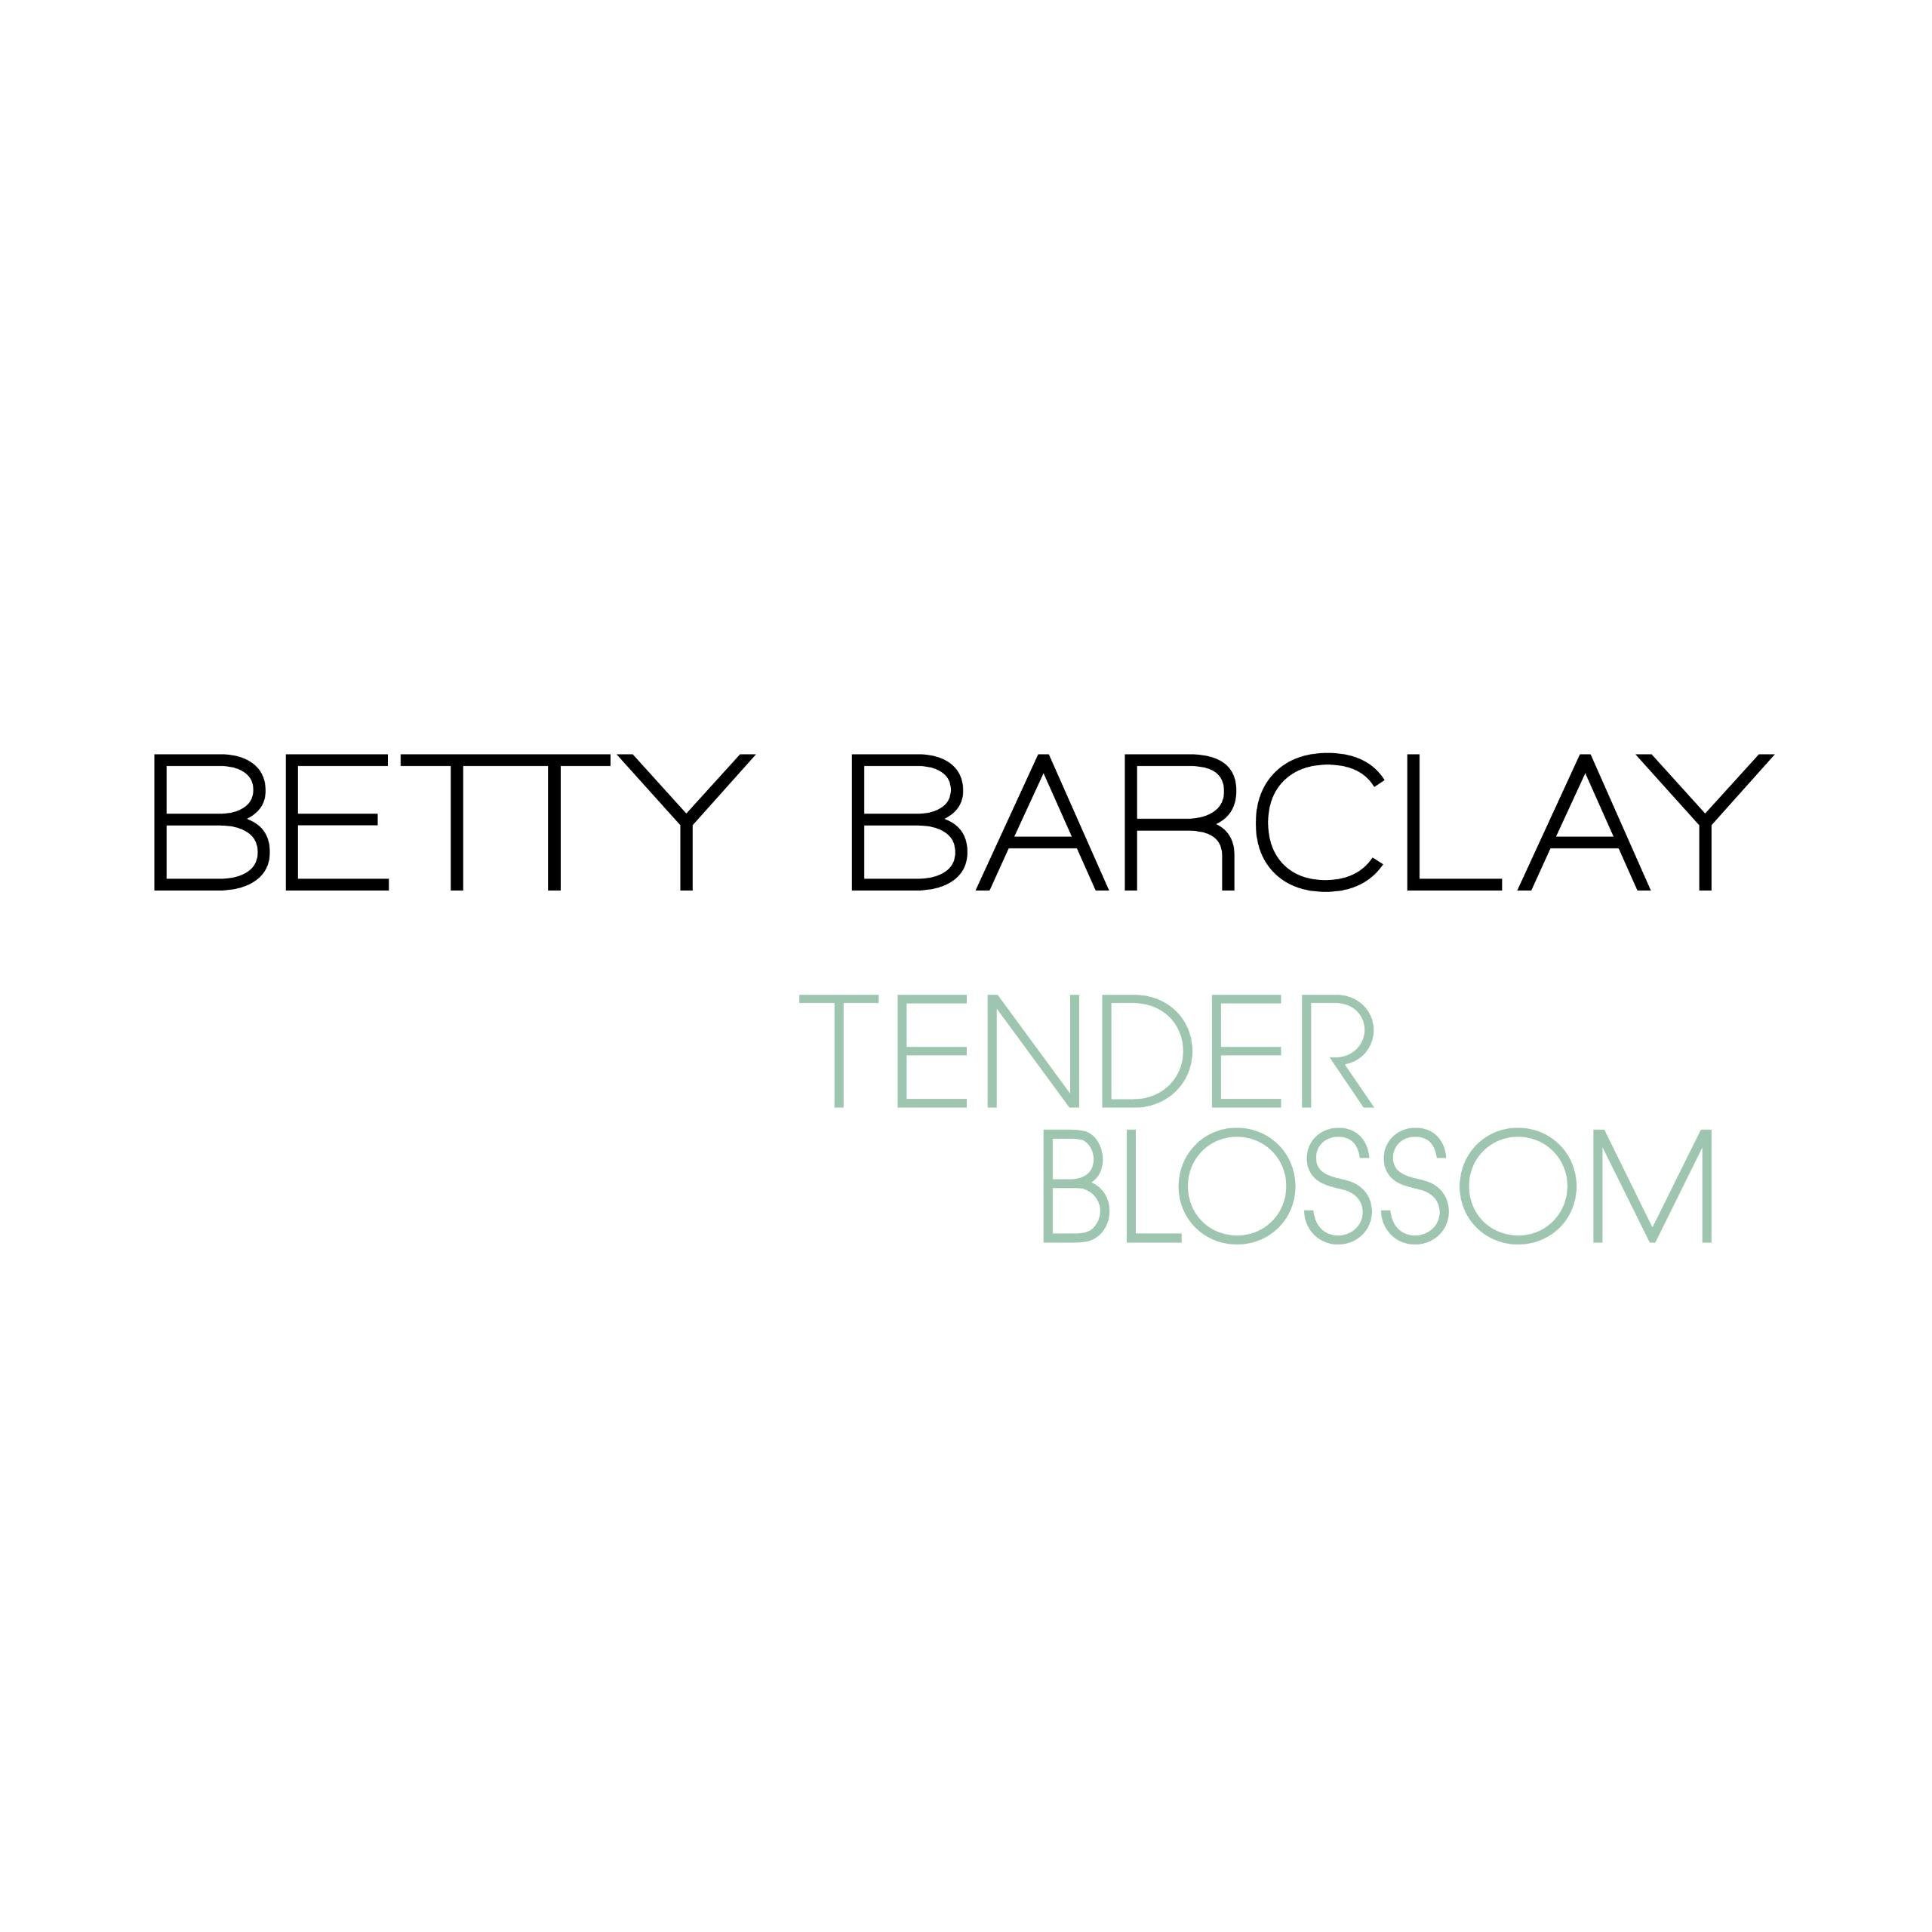 Betty Barclay Tender Toilette Blossom Barclay Toilette ml Eau 50 de Betty Eau de